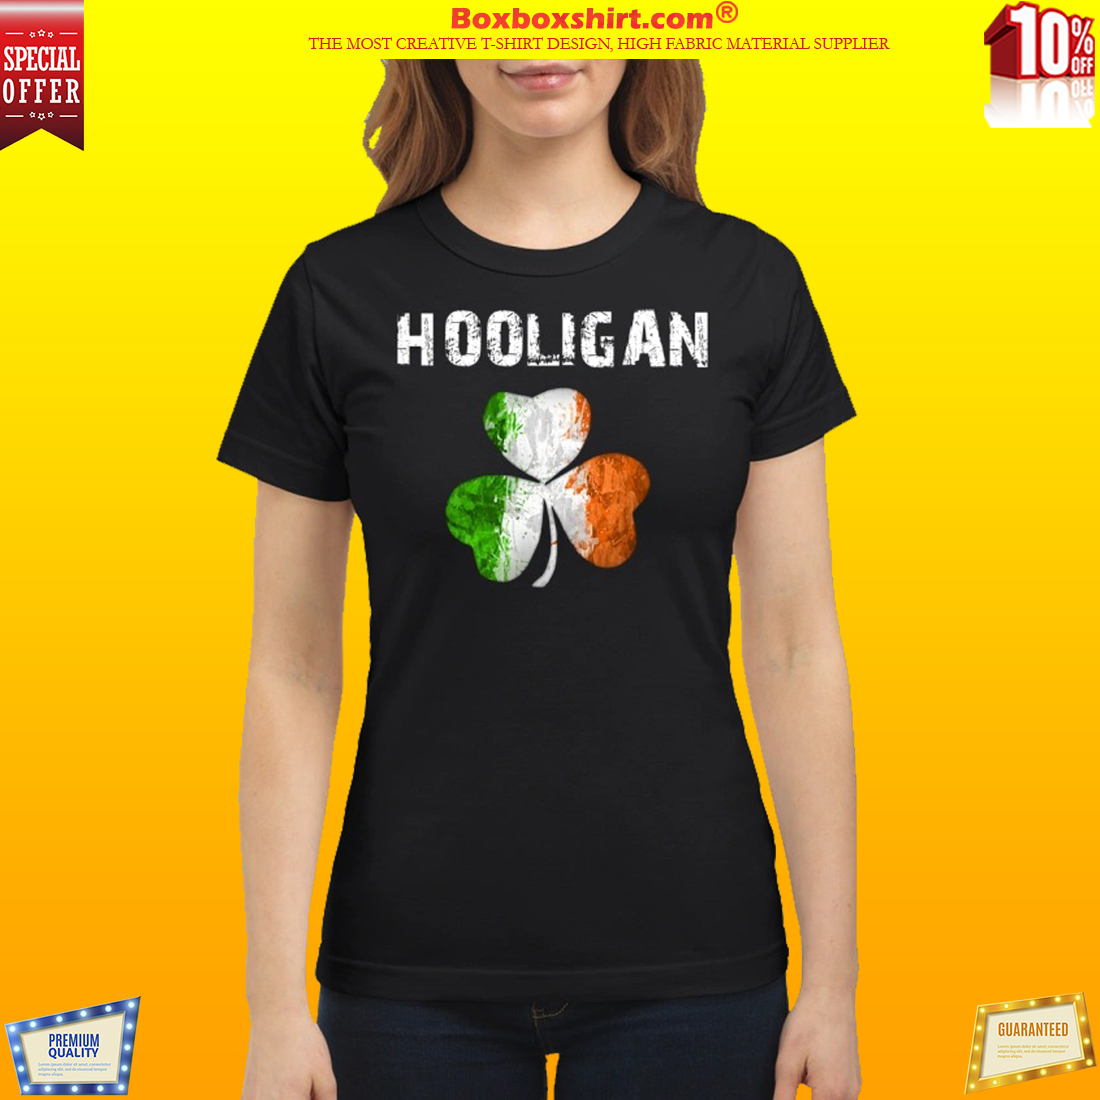 Irish flag shamrock hooligan classic shirt